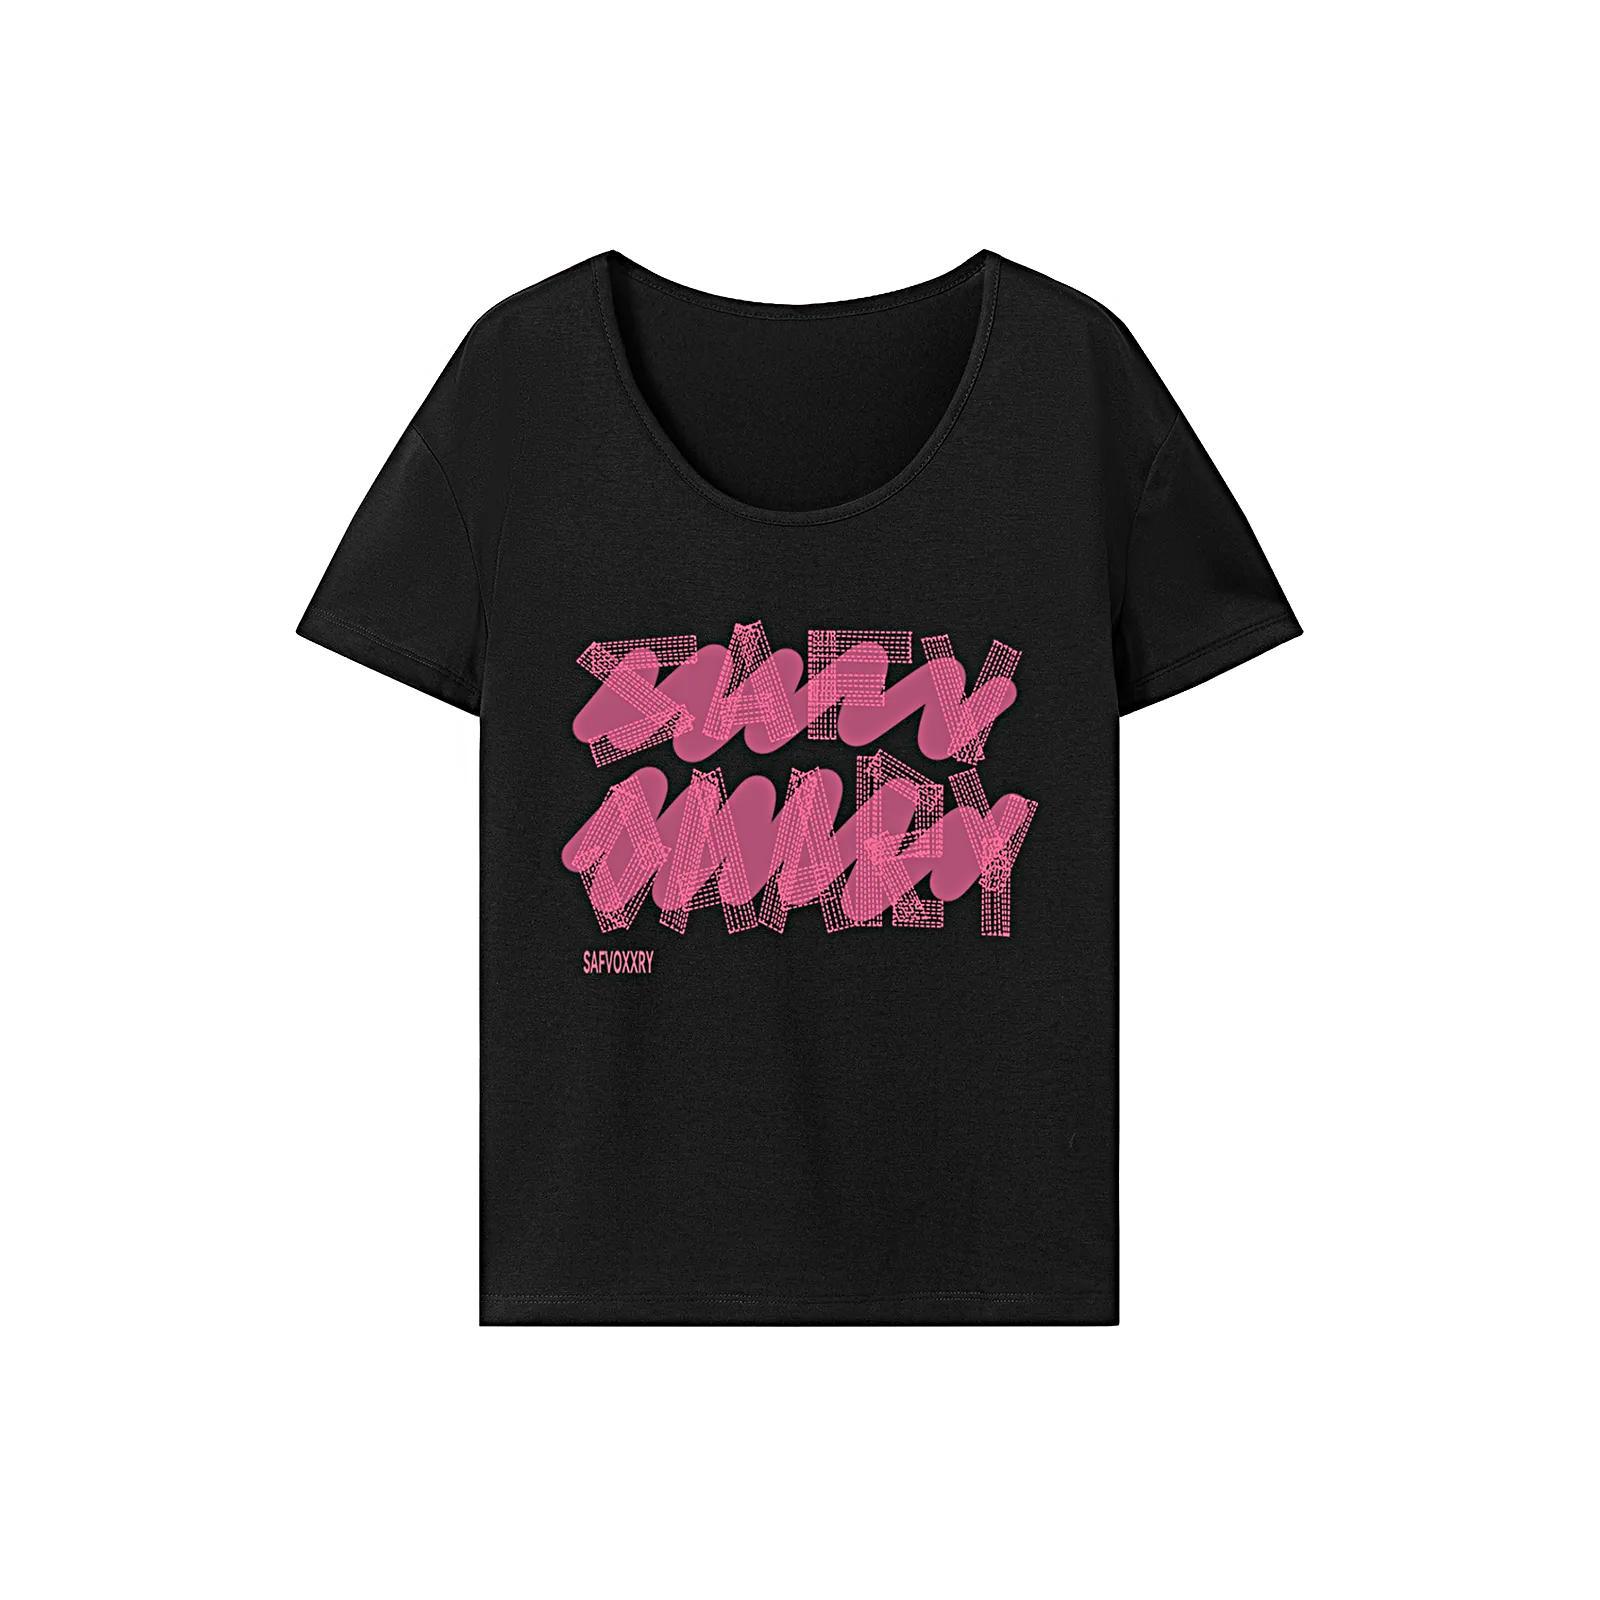 T Shirt for Women Summer Lightweight Crew Neck Tee for Walking Shopping Work XXL